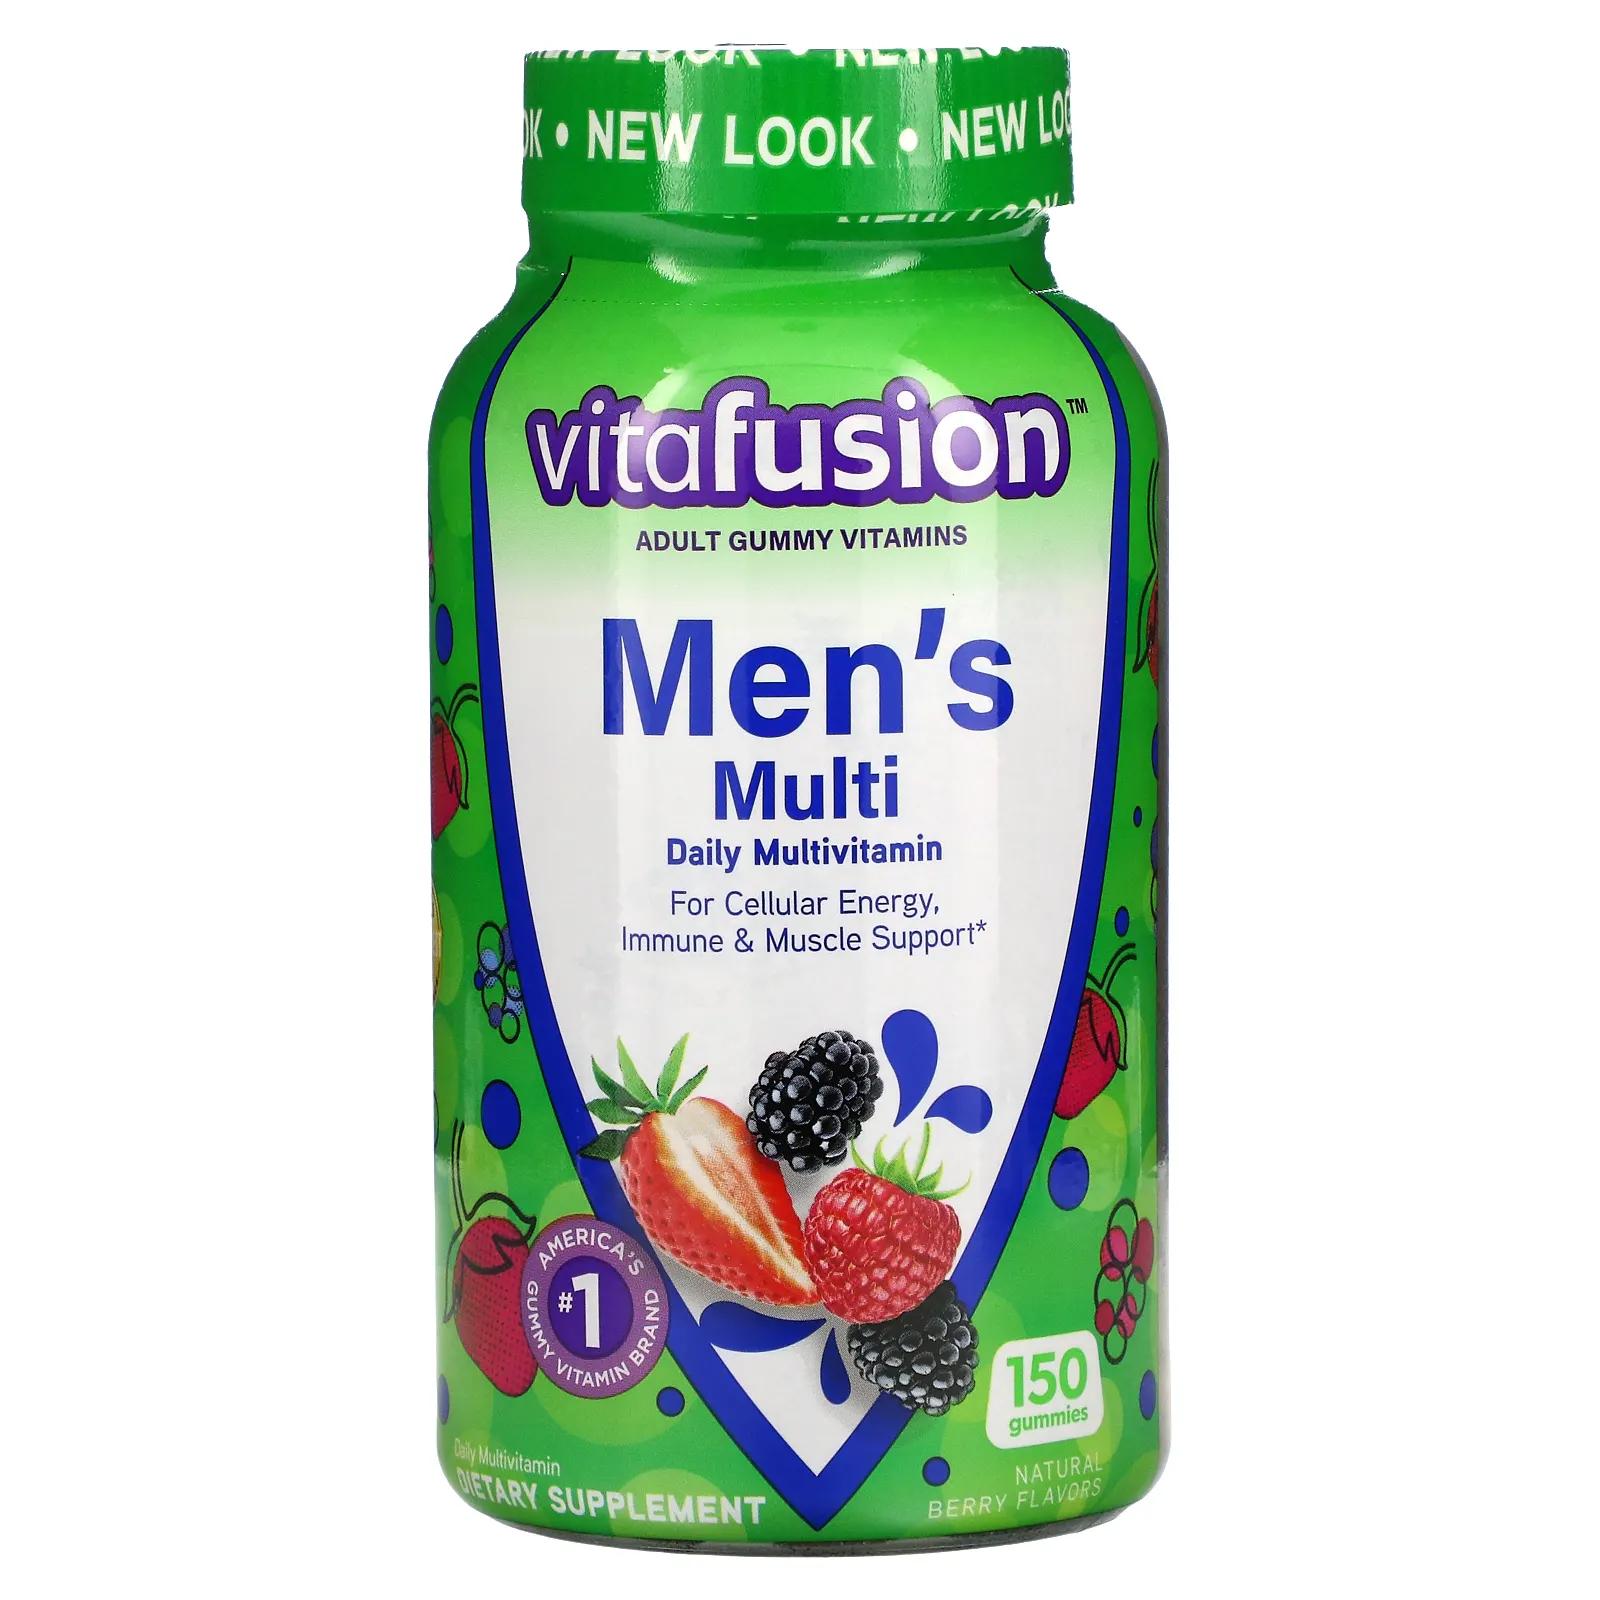 VitaFusion Комплексные мультивитамины для мужчин натуральные ягодные вкусы 150 жевательных таблеток жевательные мультивитамины vitafusion для мужчин 150 таблеток